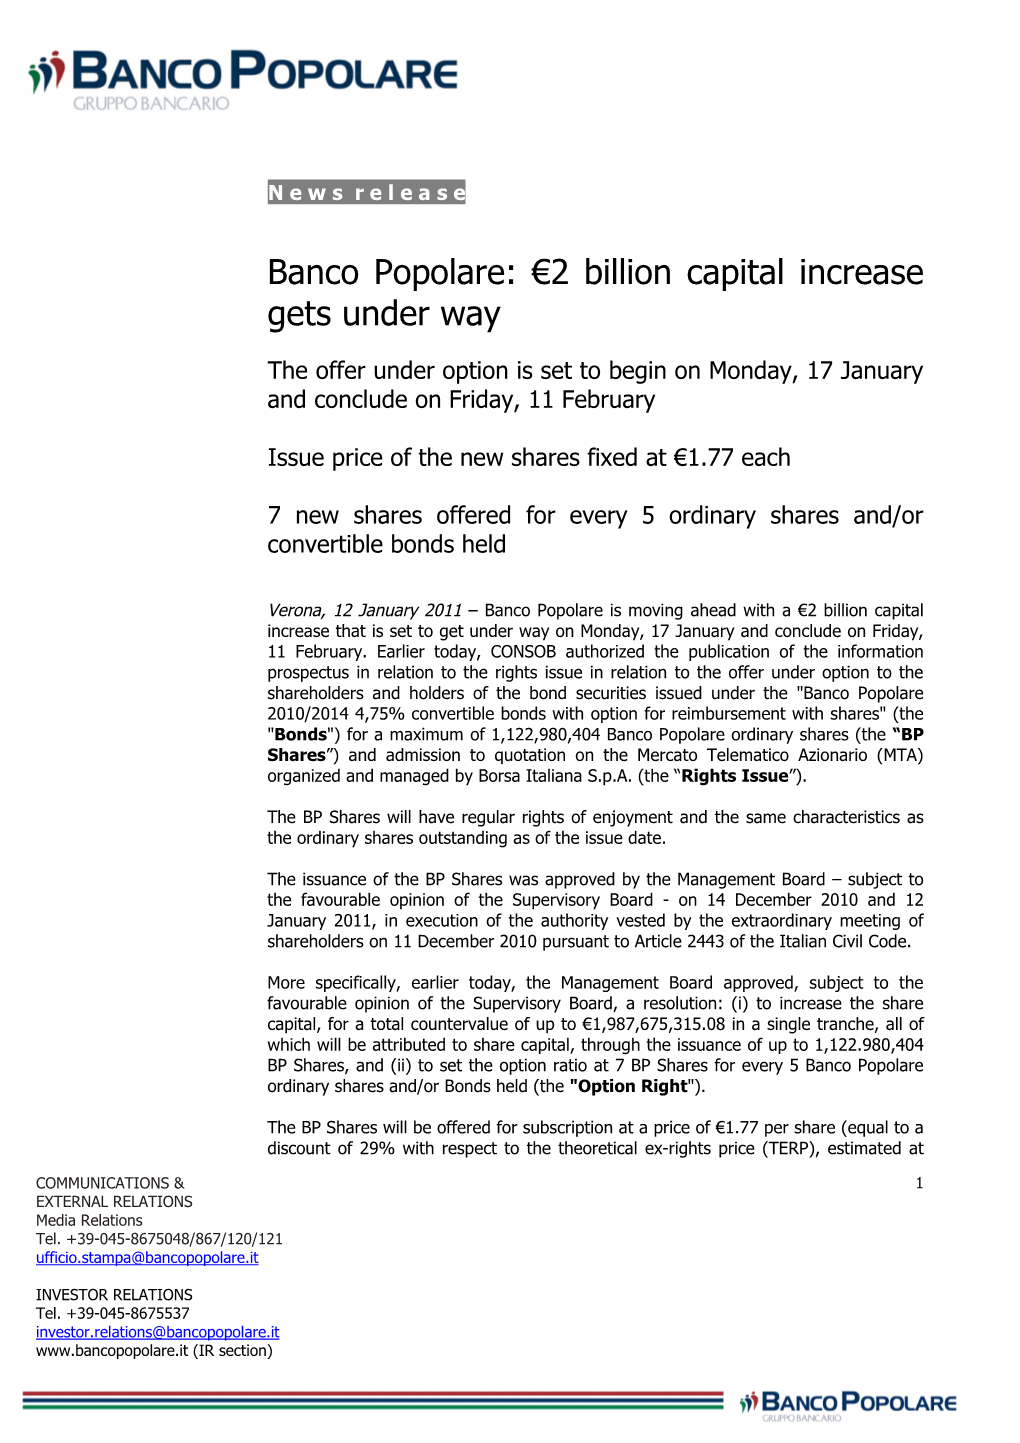 Banco Popolare: €2 Billion Capital Increase Gets Under Way